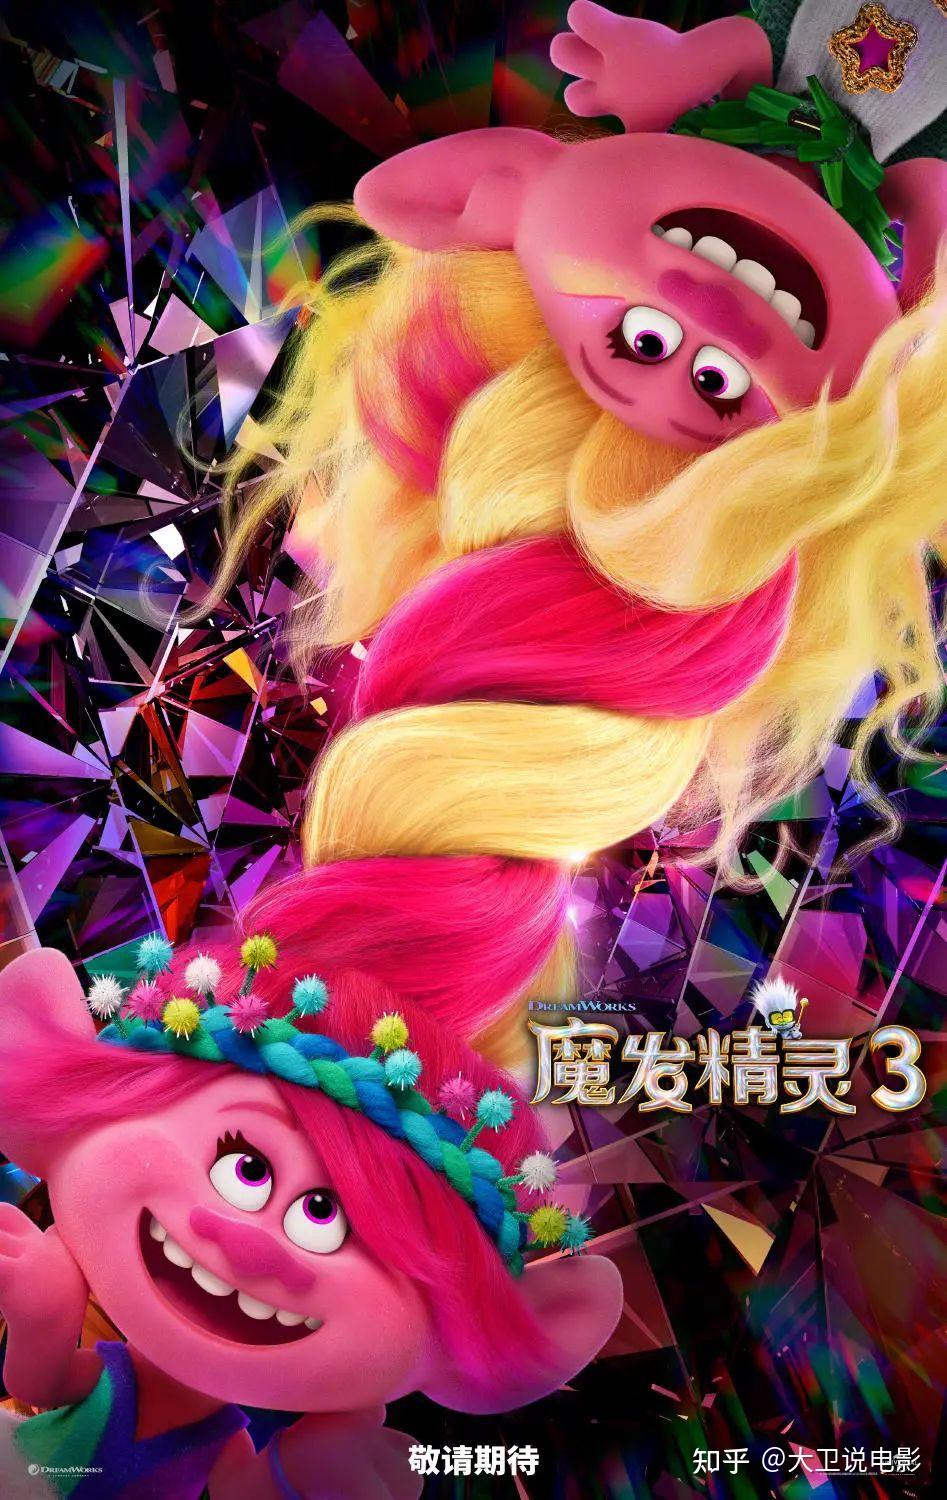 《魔发精灵 3》首曝官方中文版预告片,其中都有哪些看点值得分享?